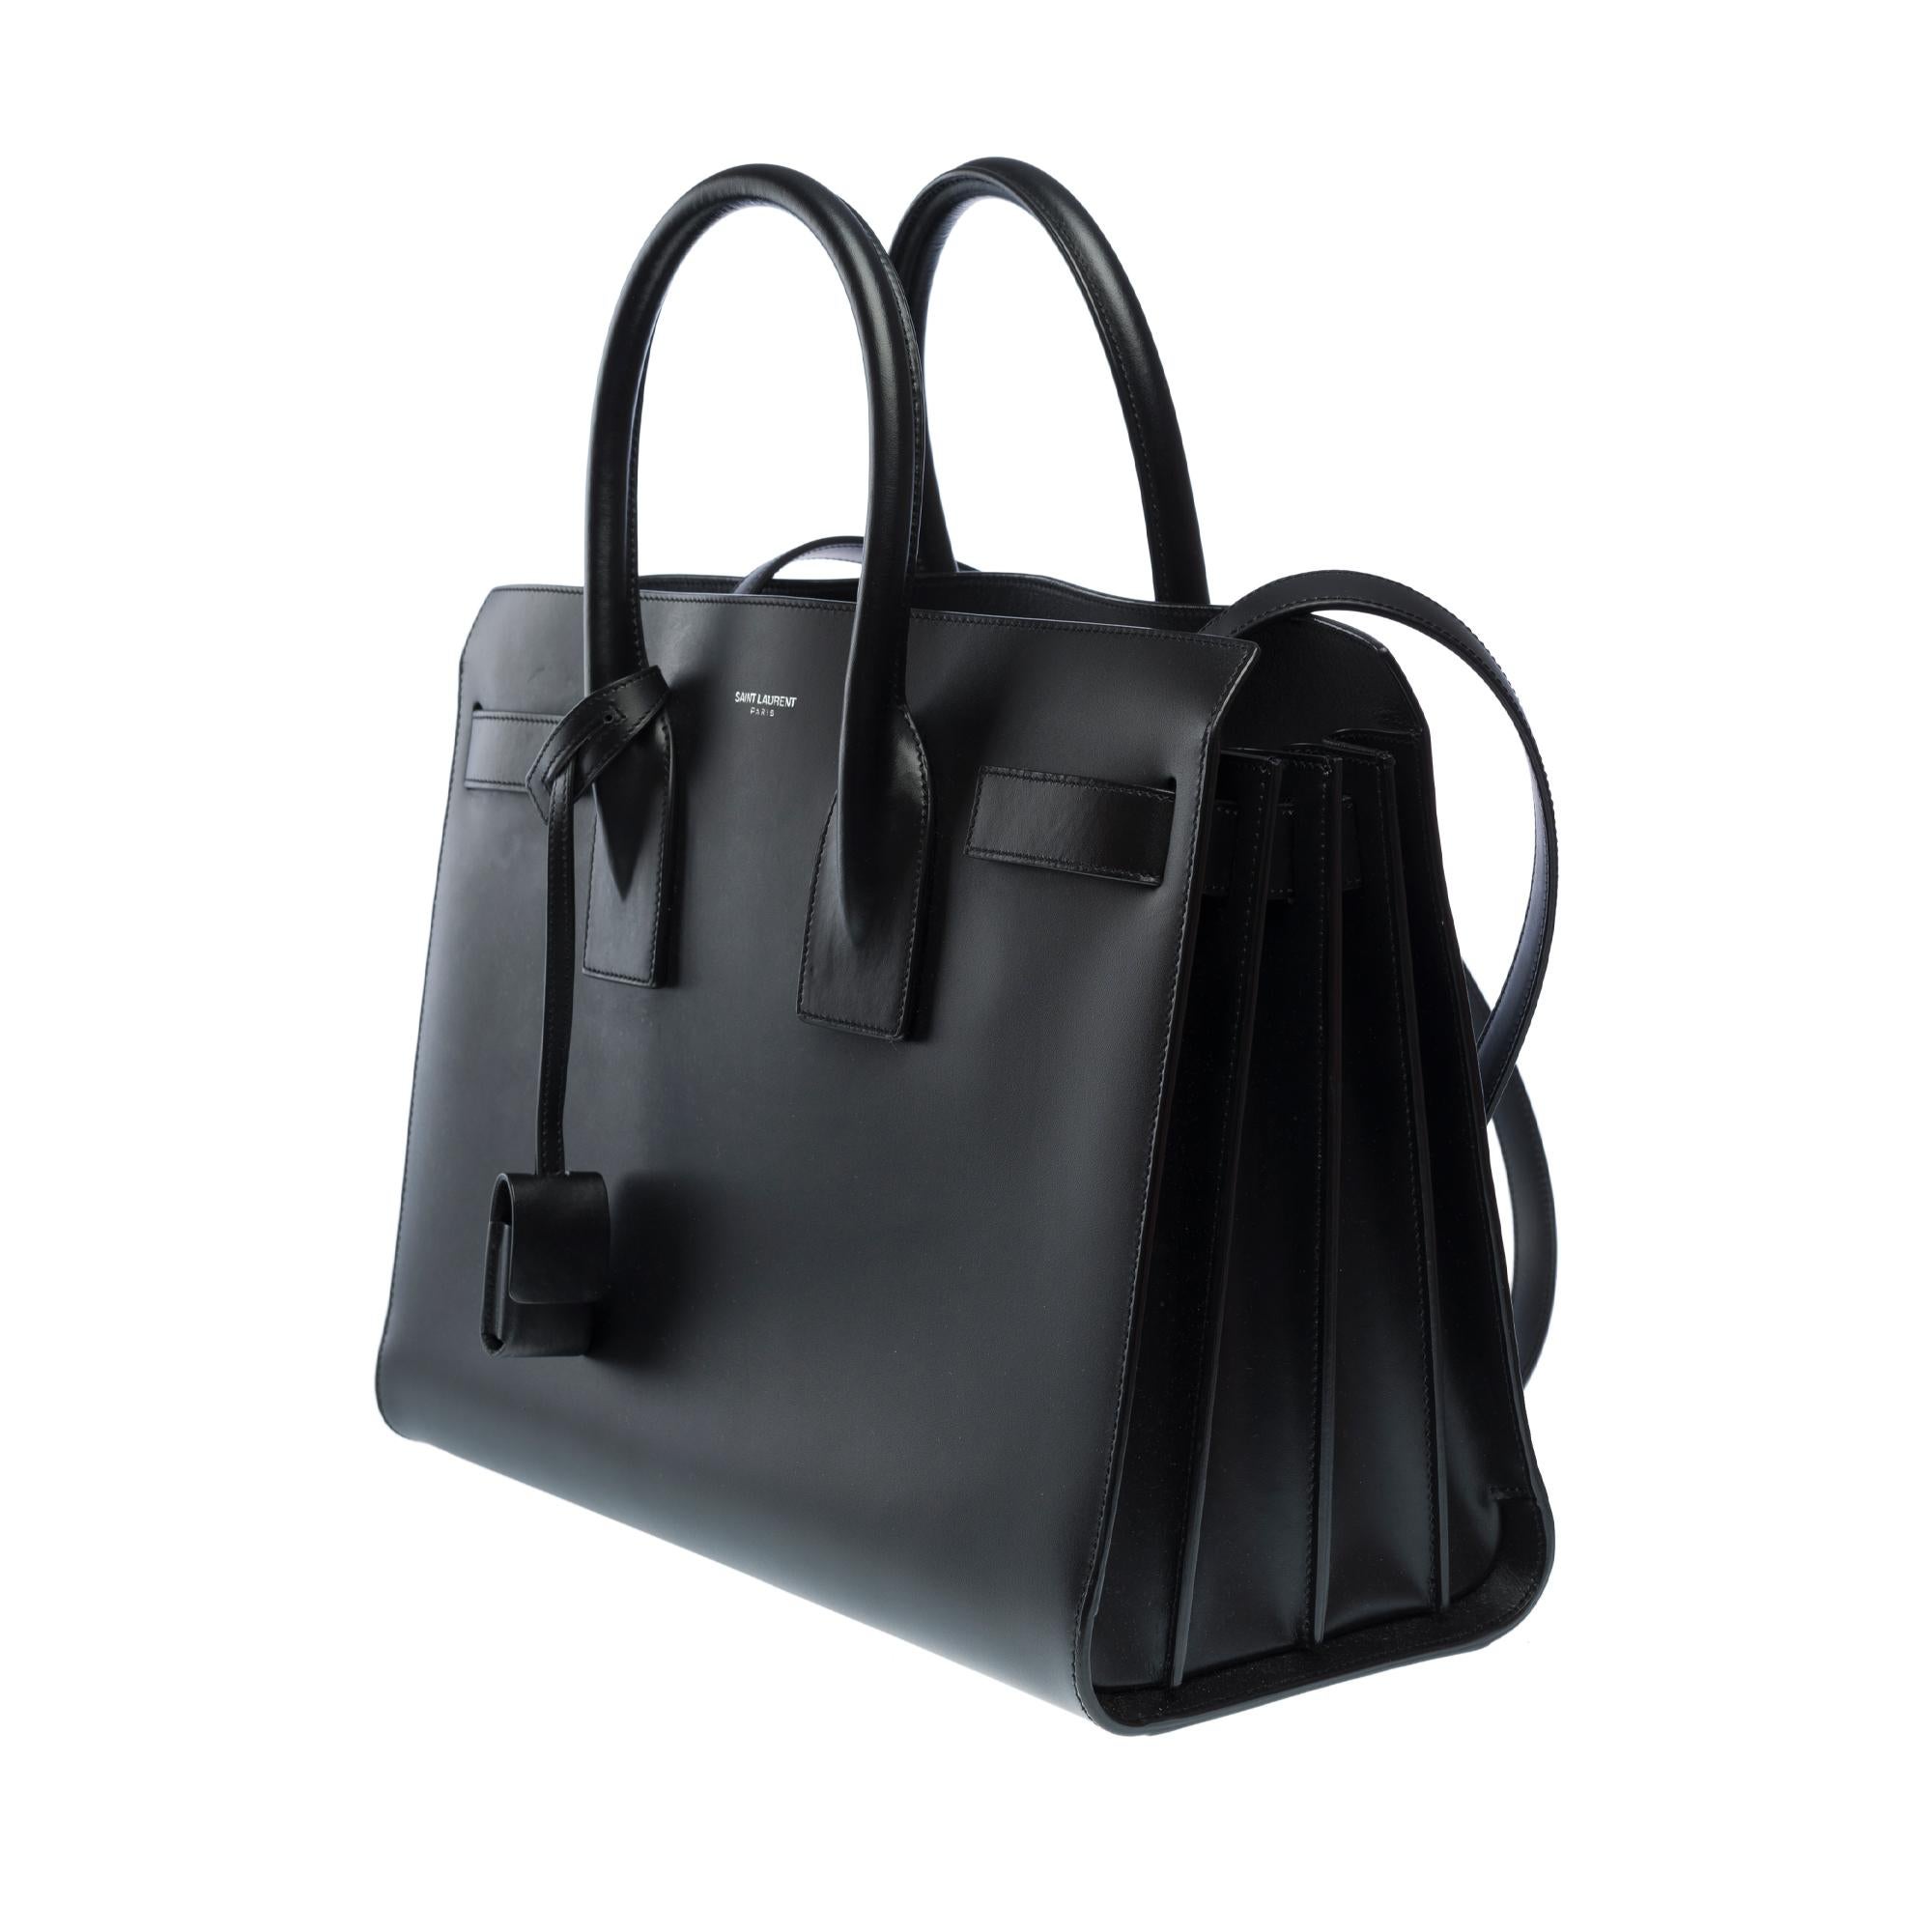 Saint Laurent Sac de Jour Small size handbag strap in black Box calf leather For Sale 2